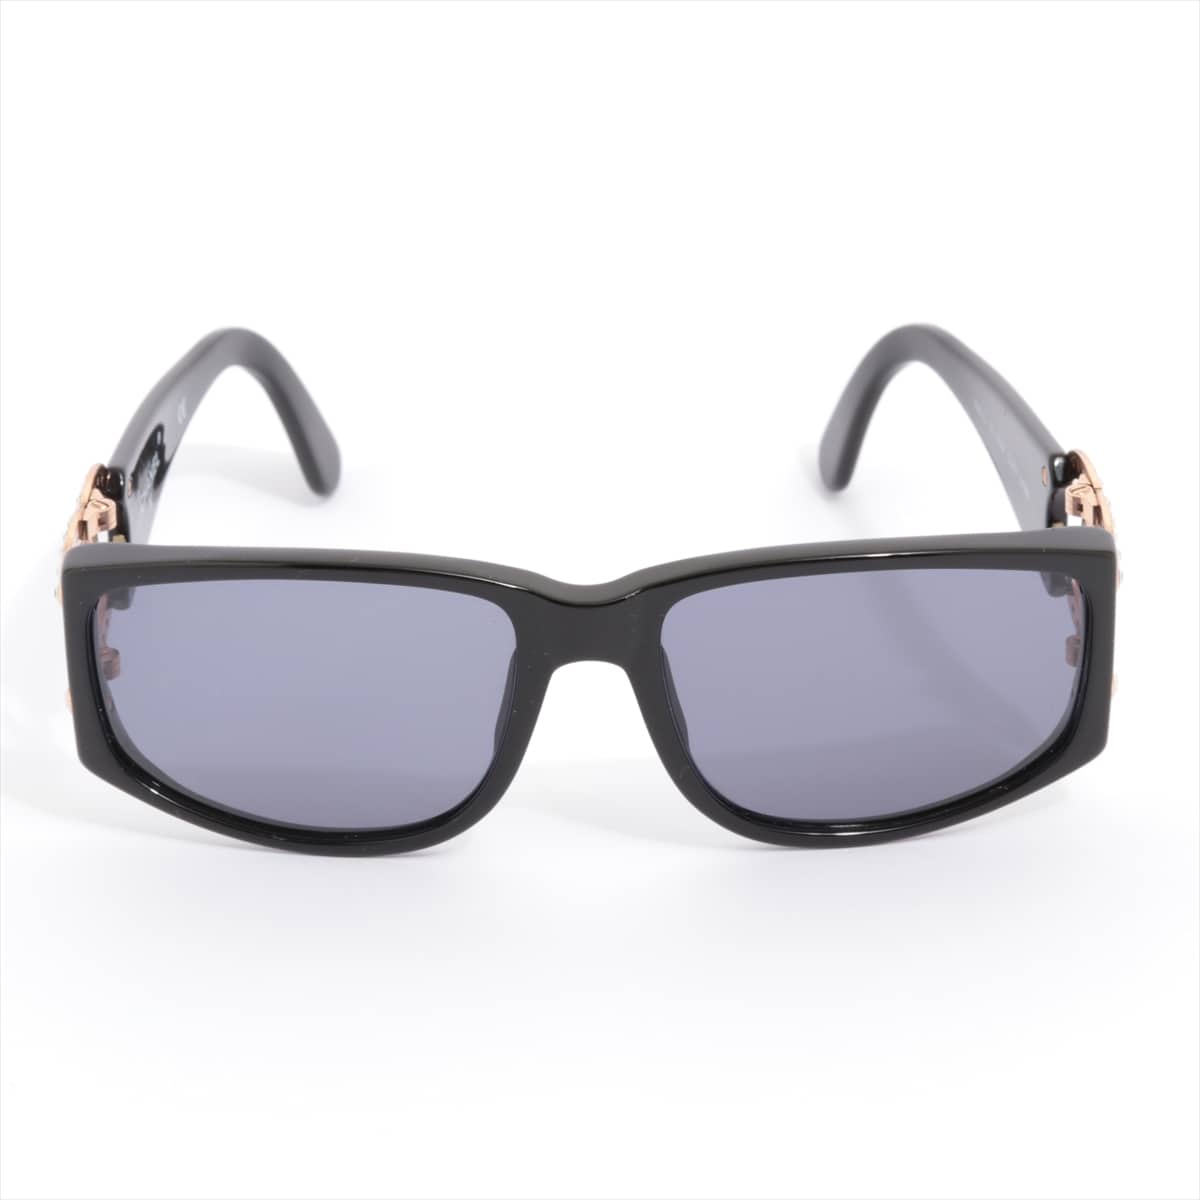 Chanel 02461 94305 Coco Mark Sunglasses Plastic Black